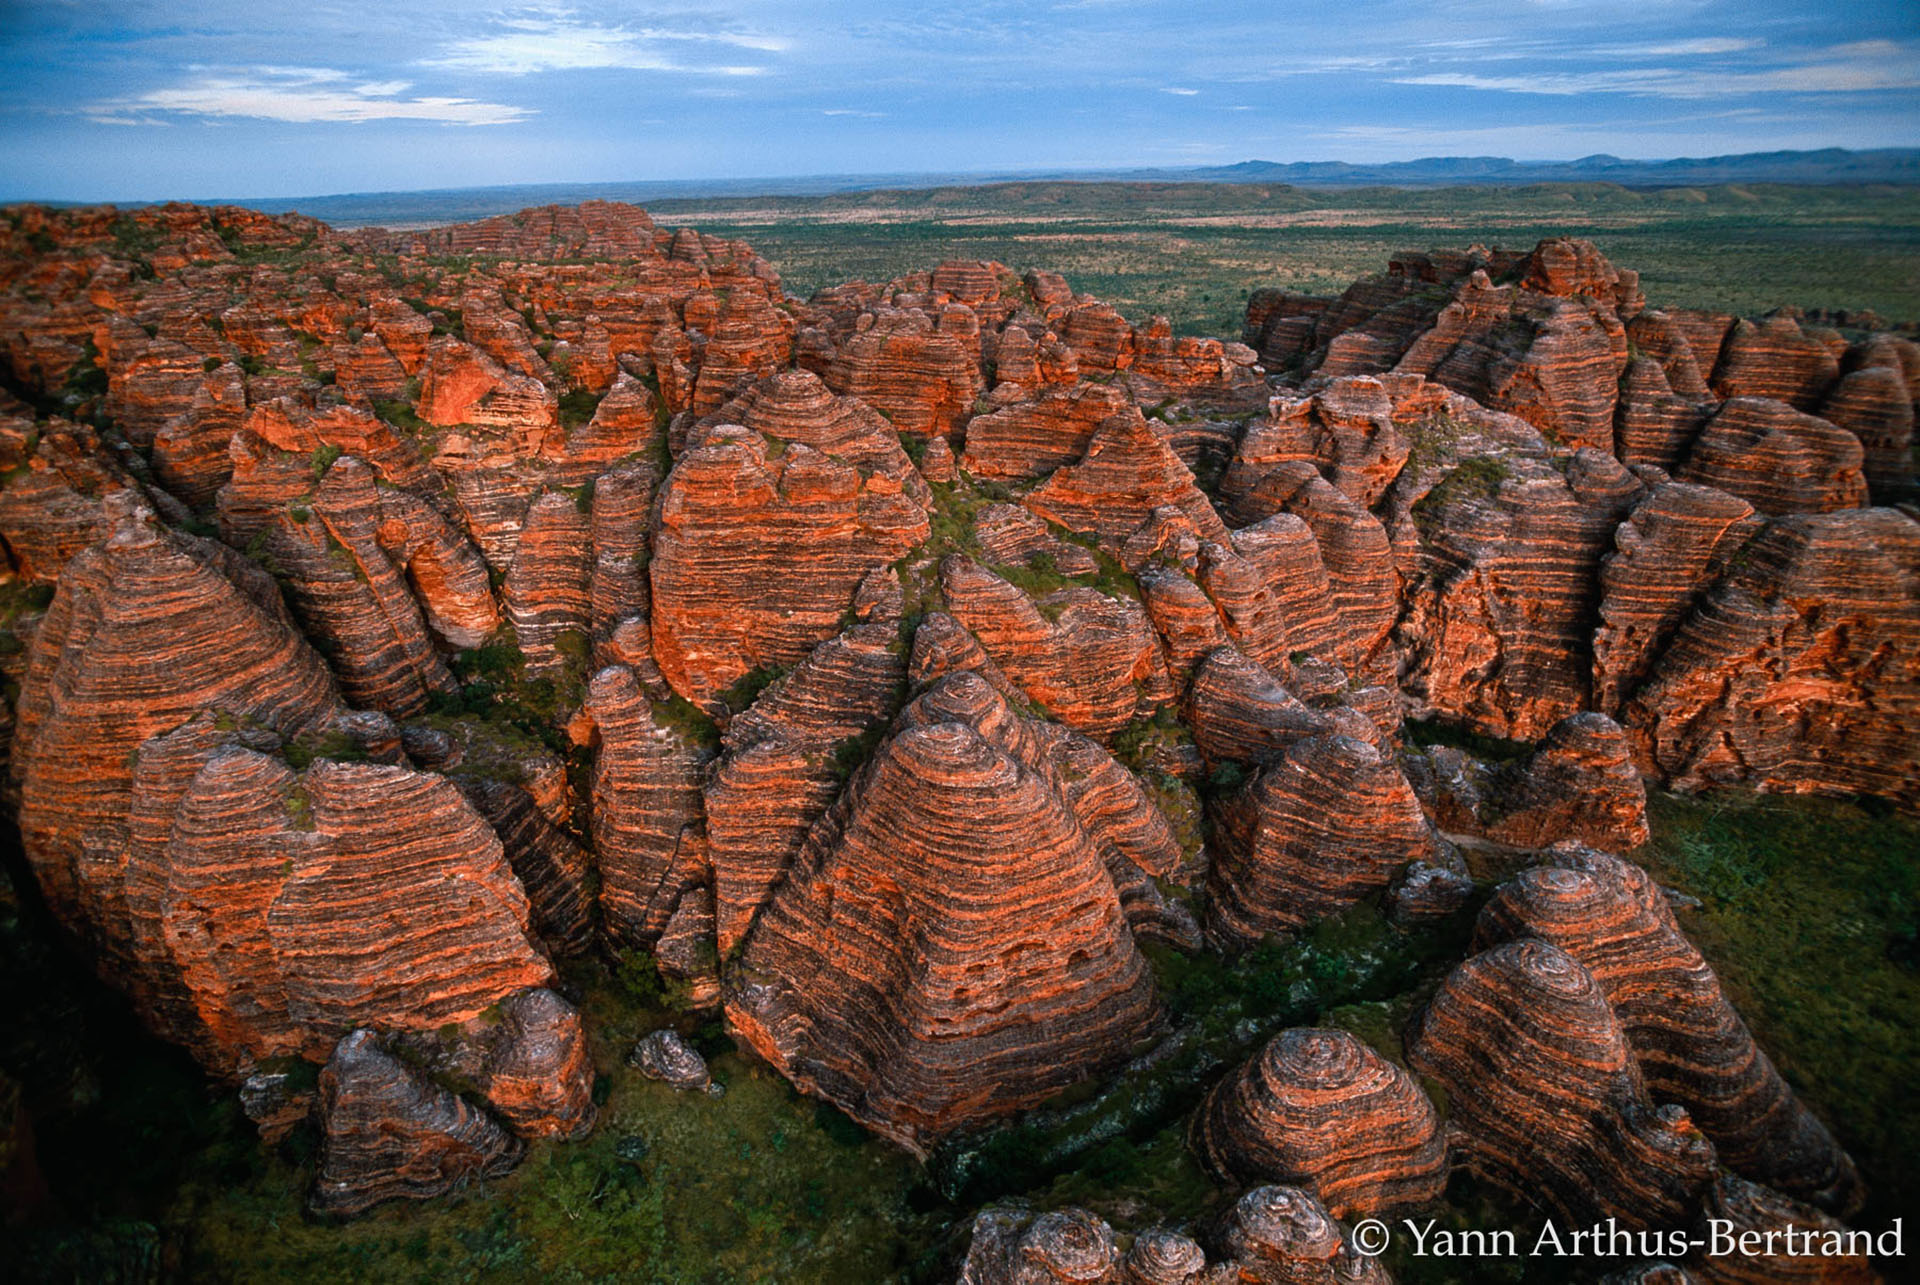 Les roches rouges du site de Purnululu